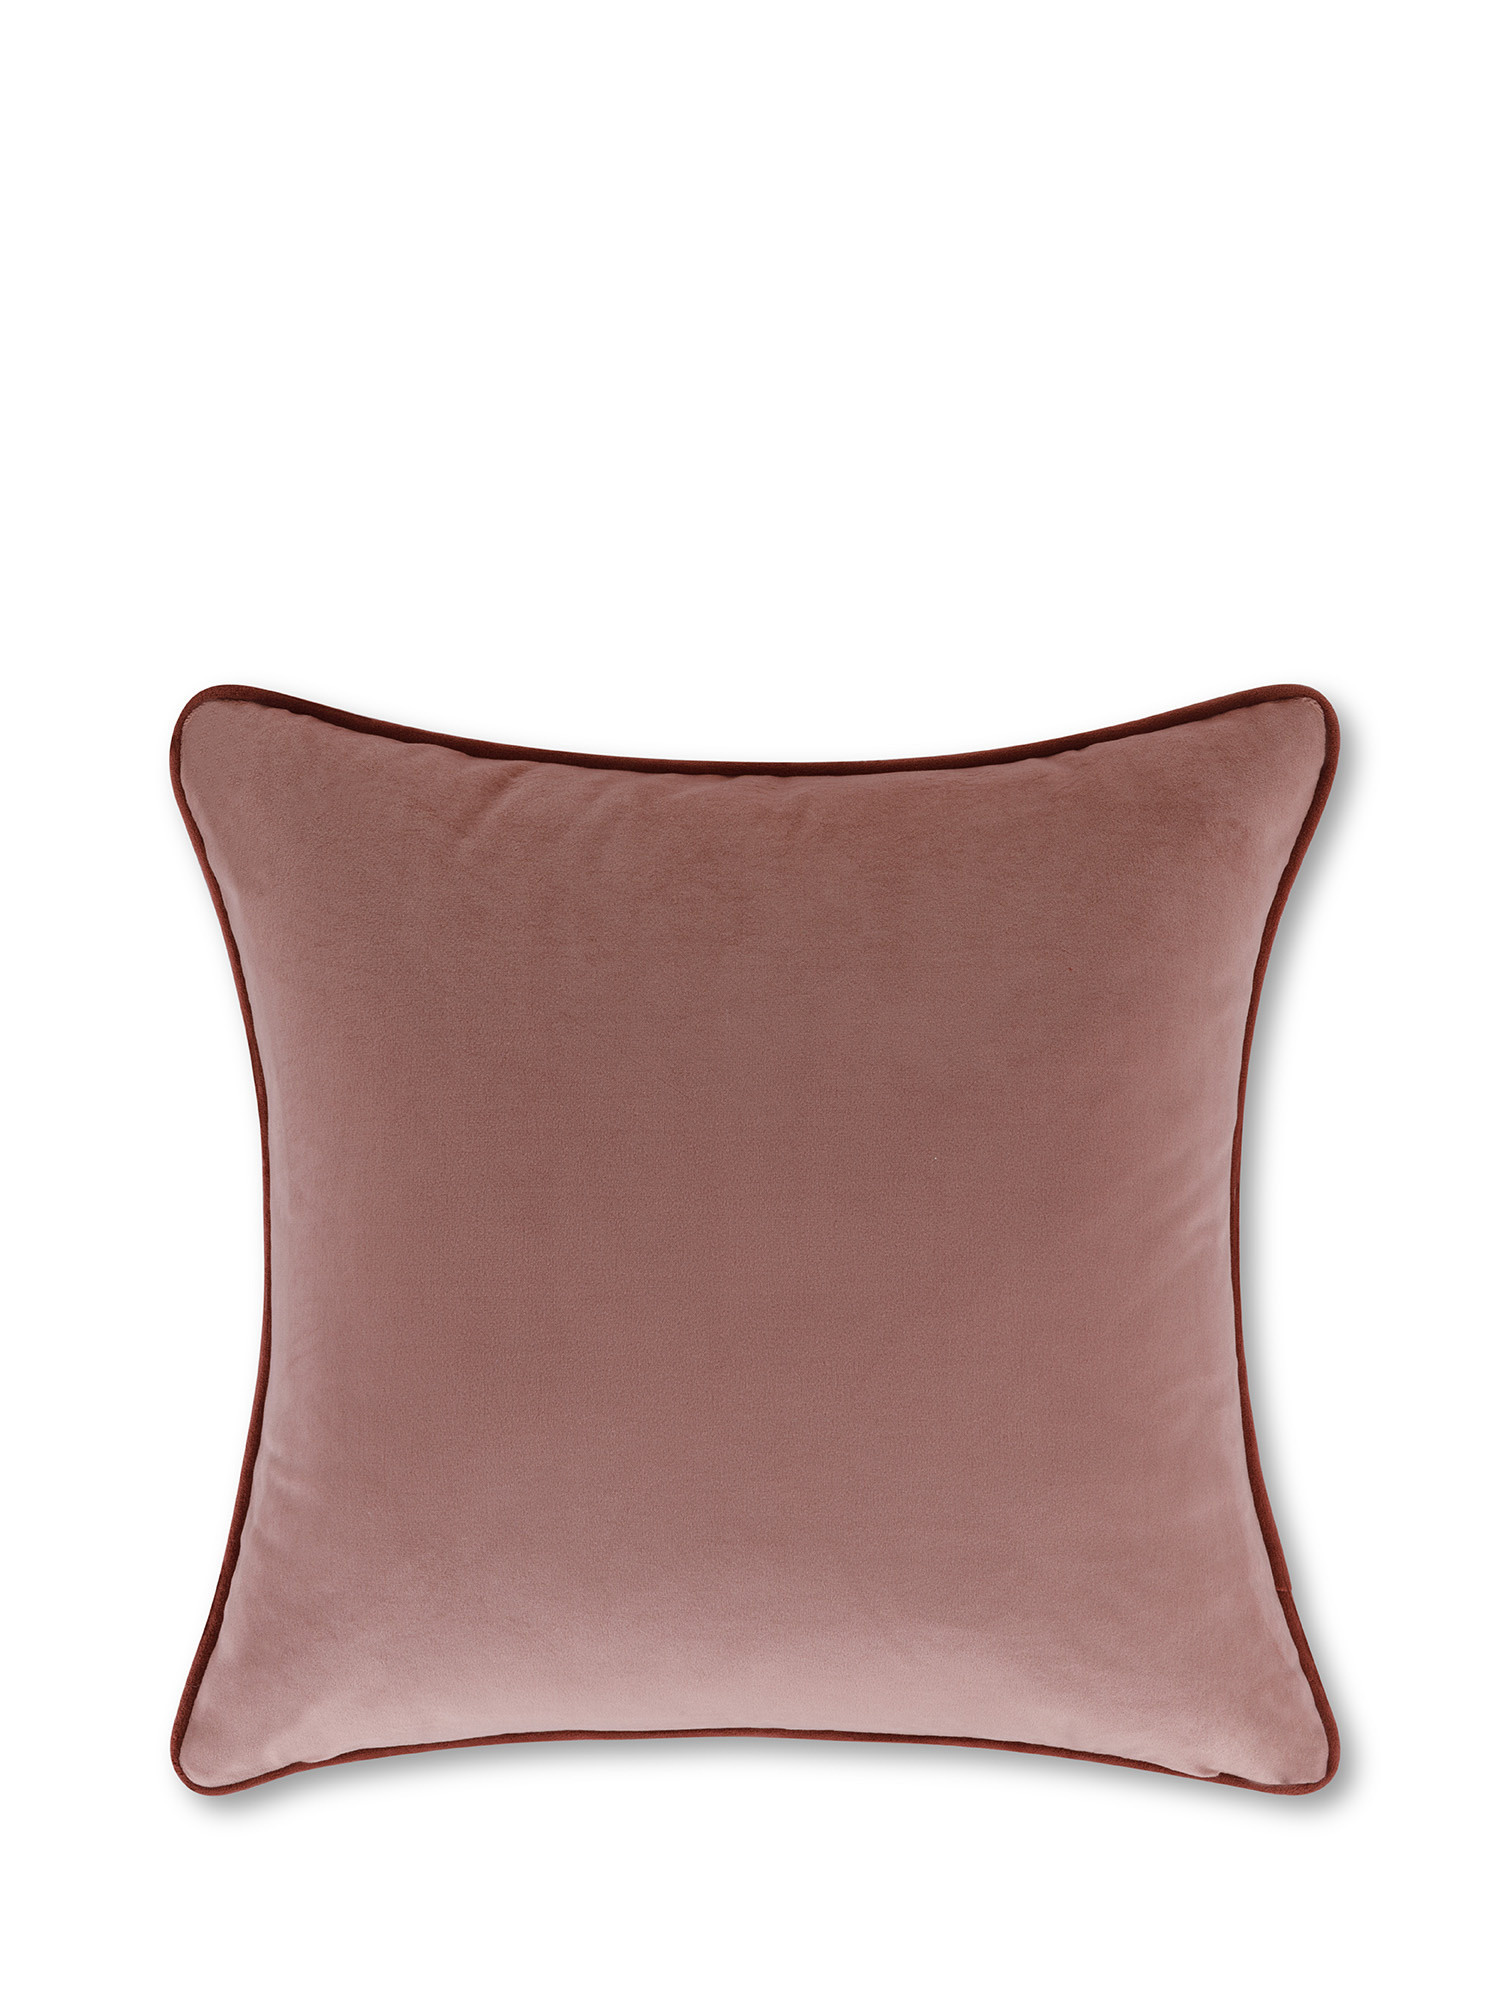 Cuscino in velluto con piping applicato sul bordo 45x45 cm, Rosa, large image number 0